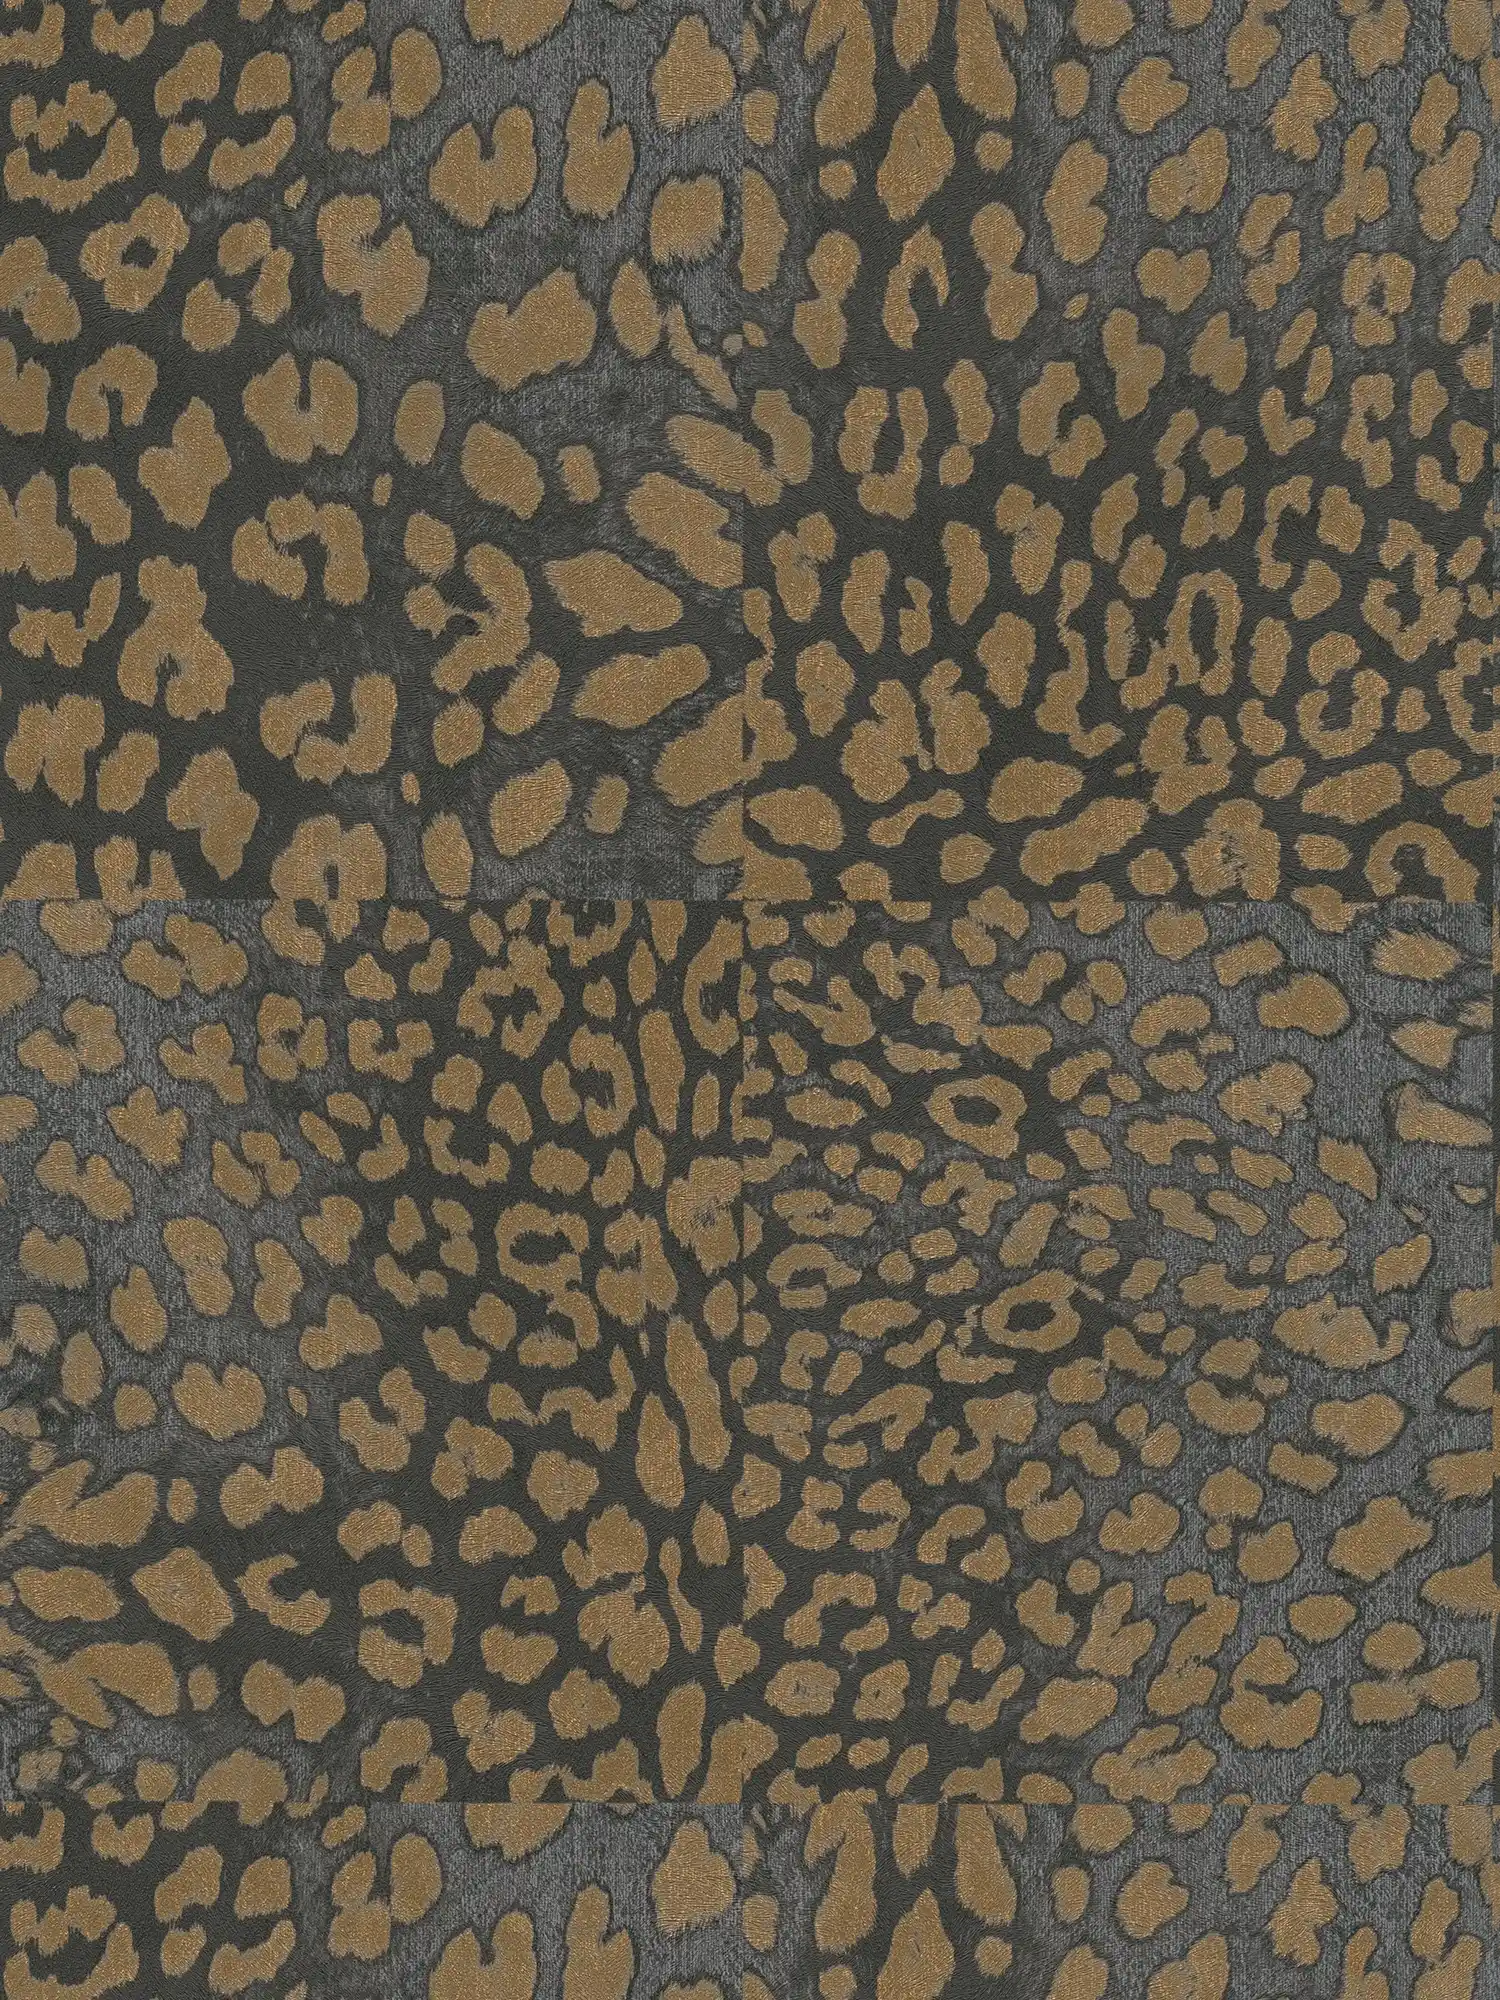 Animal print wallpaper with metallic pattern - grey, gold
